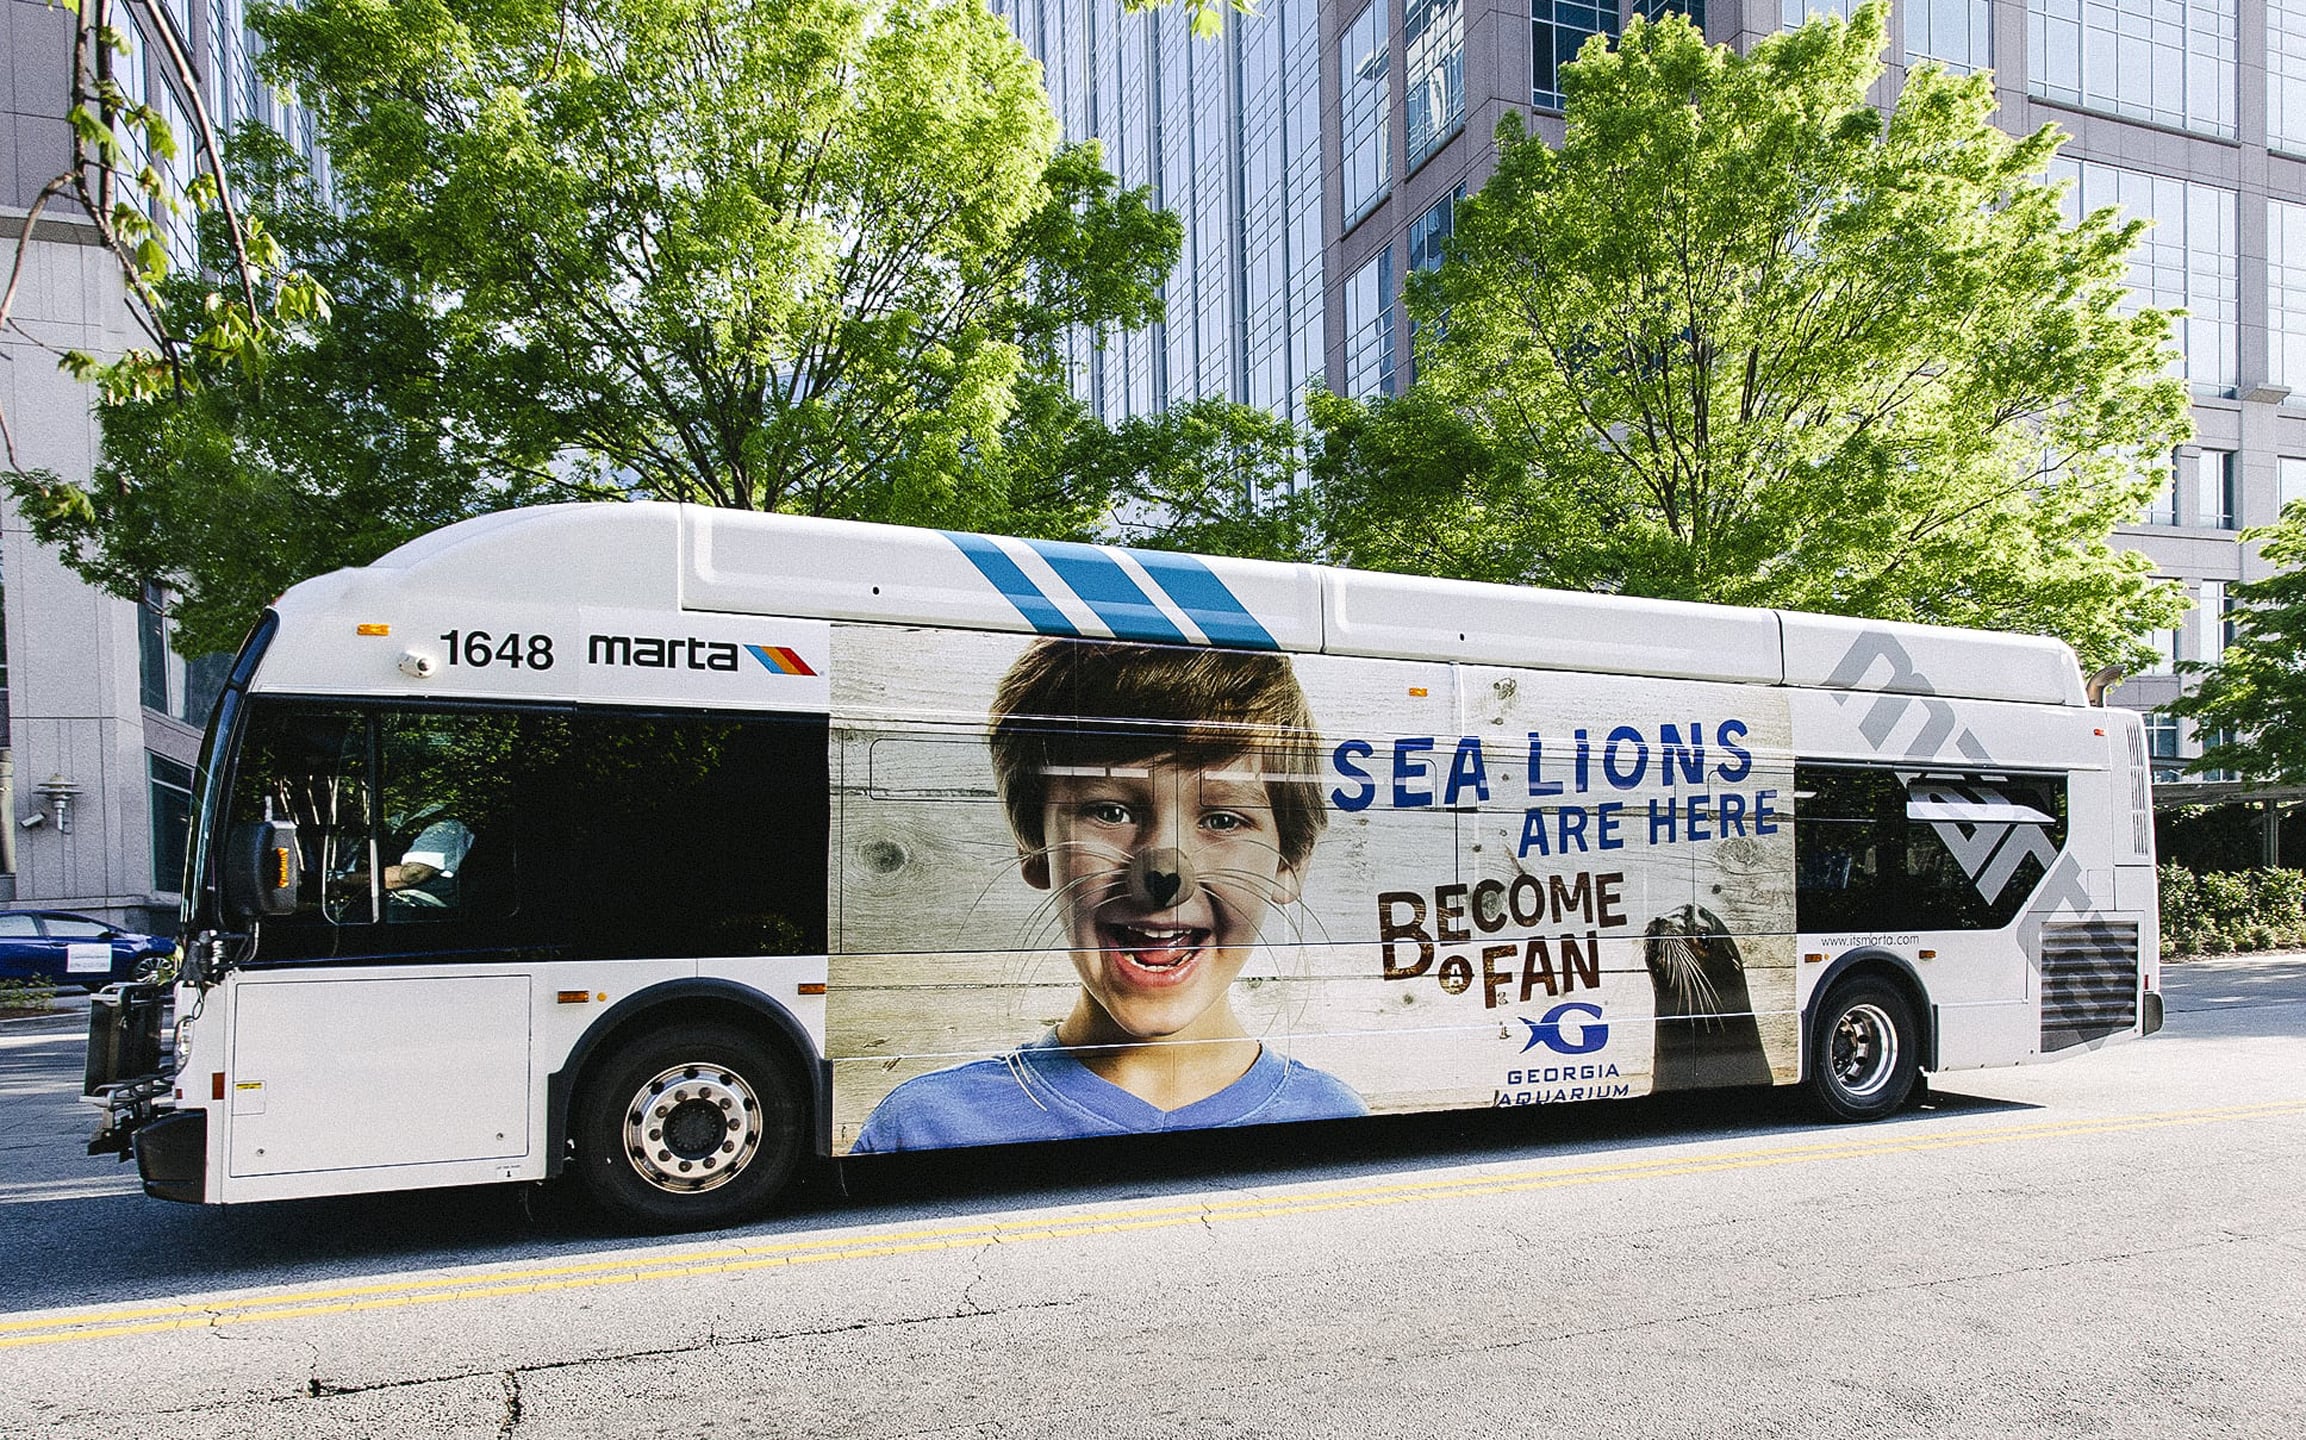 Full side transit bus wrap advertising